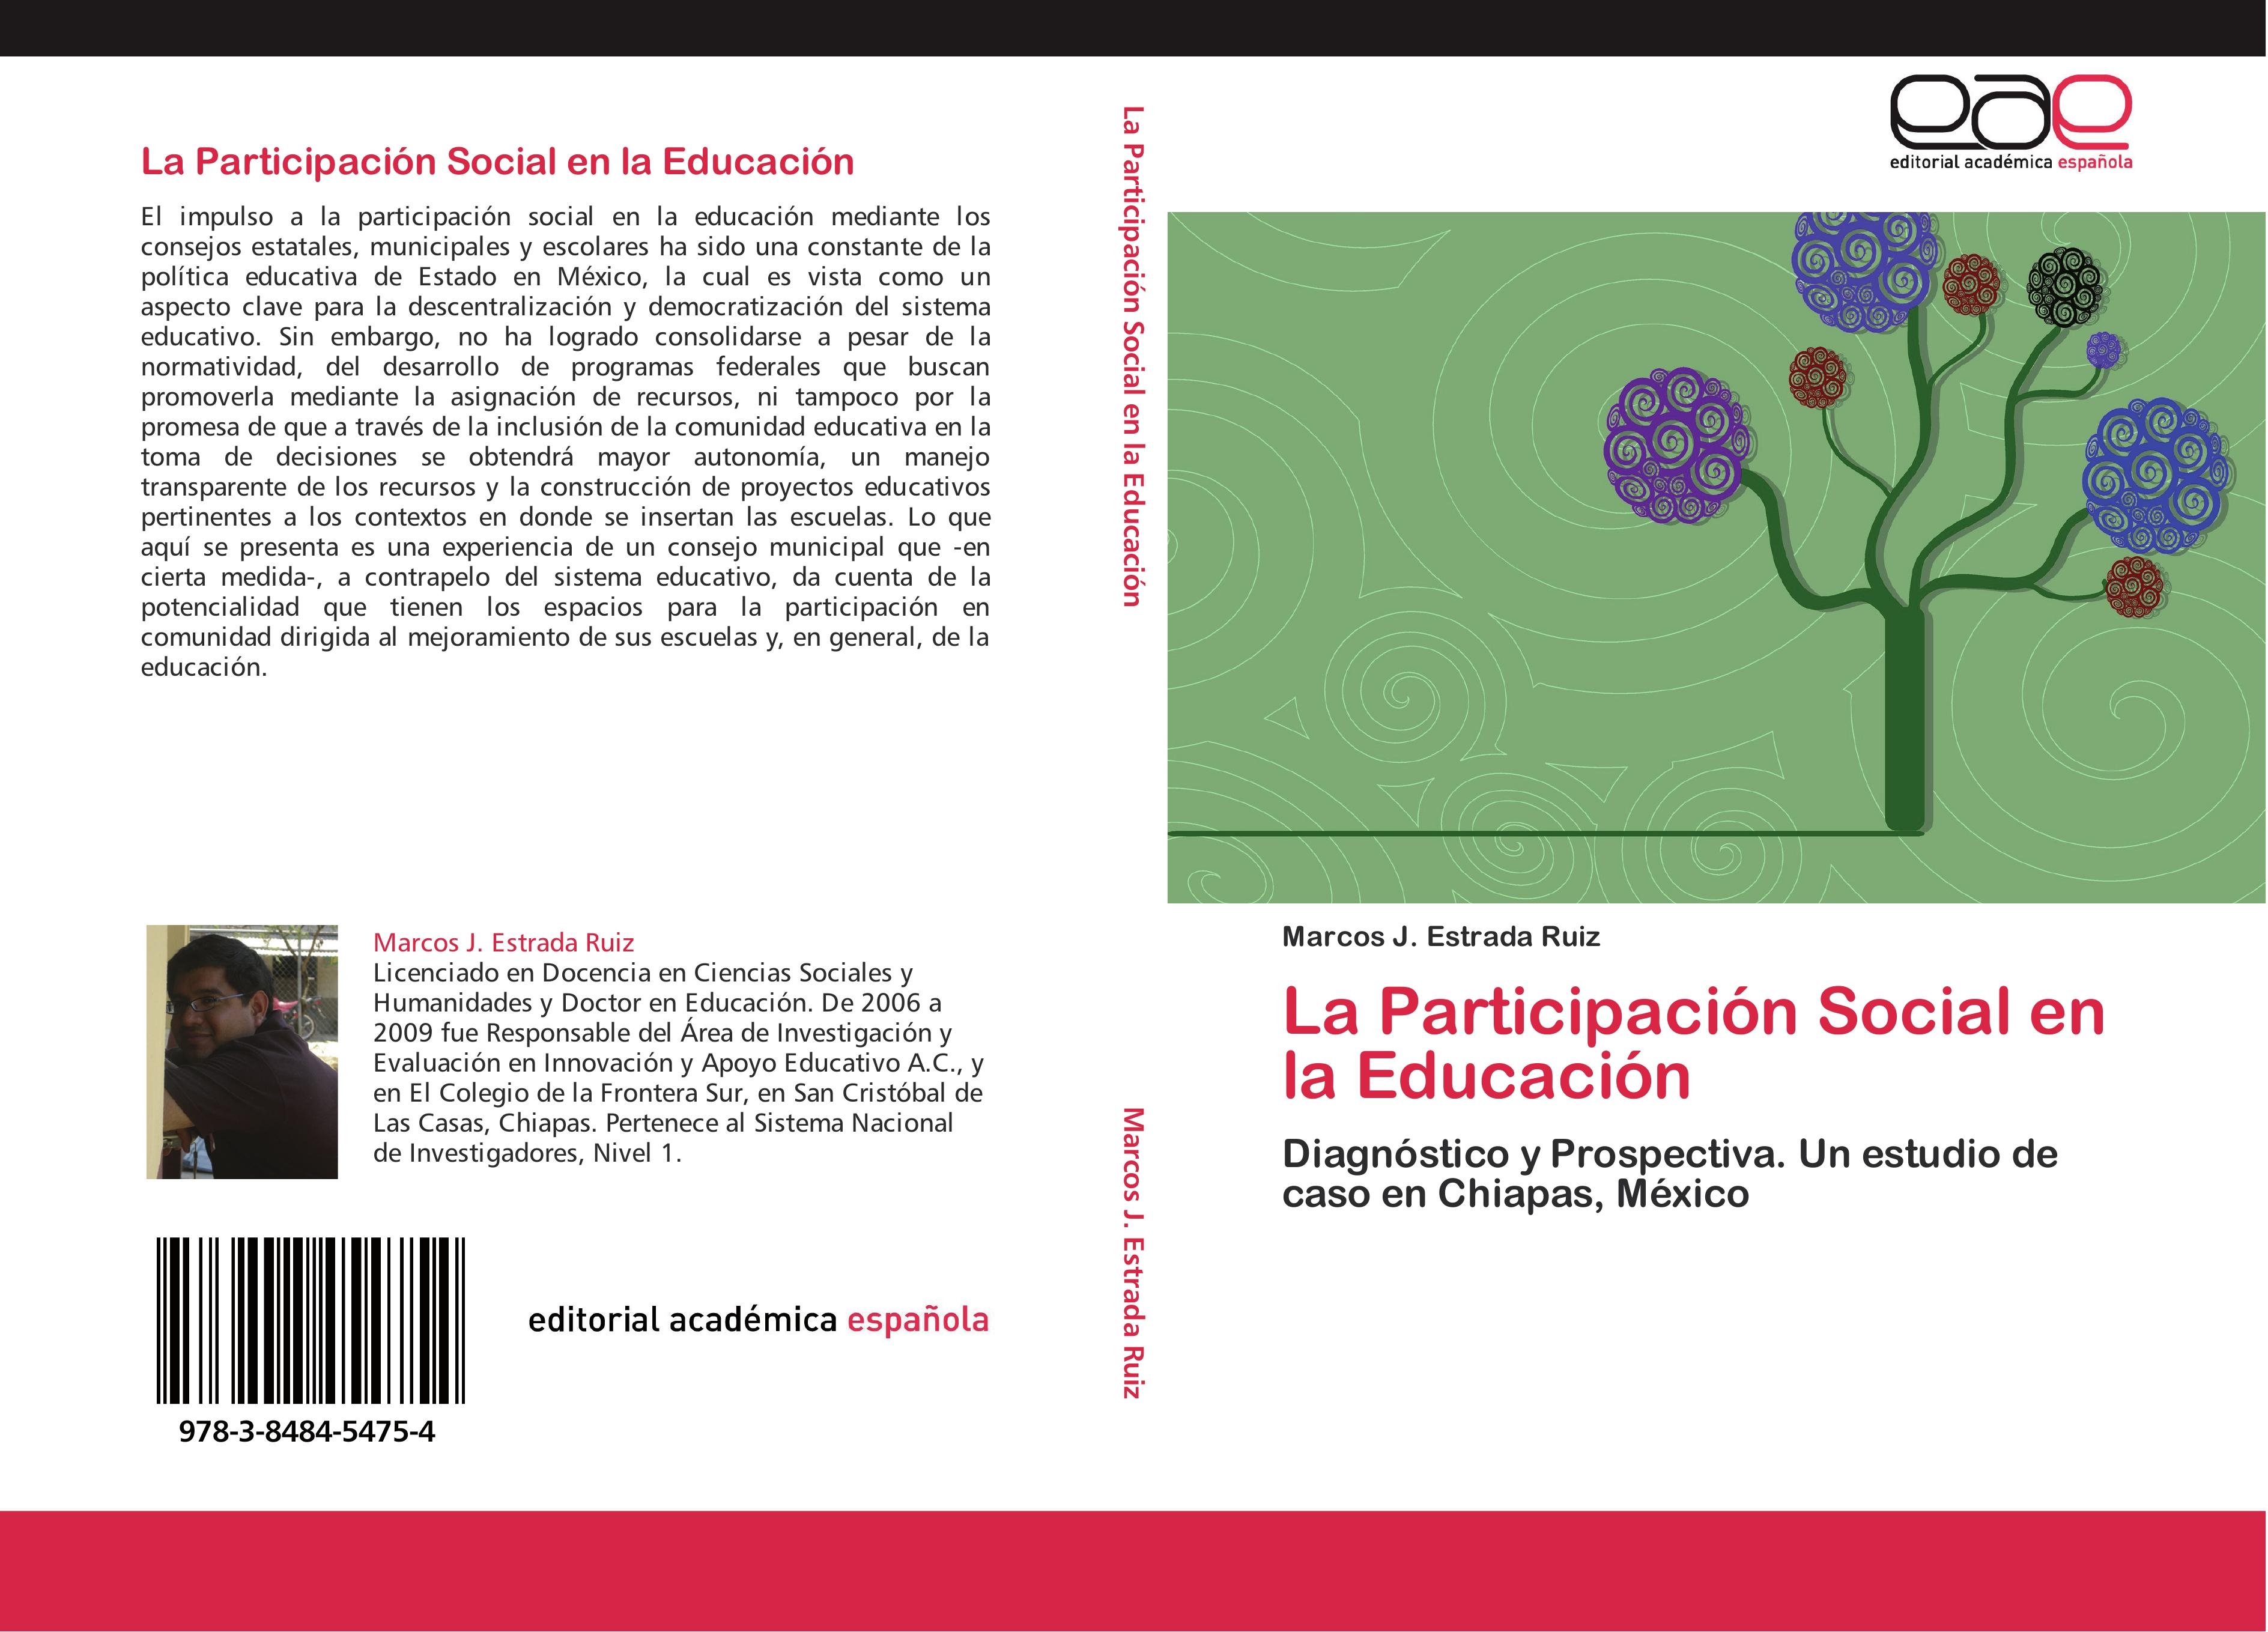 La ParticipaciÃƒÂ³n Social en la EducaciÃƒÂ³n - Estrada Ruiz, Marcos J.